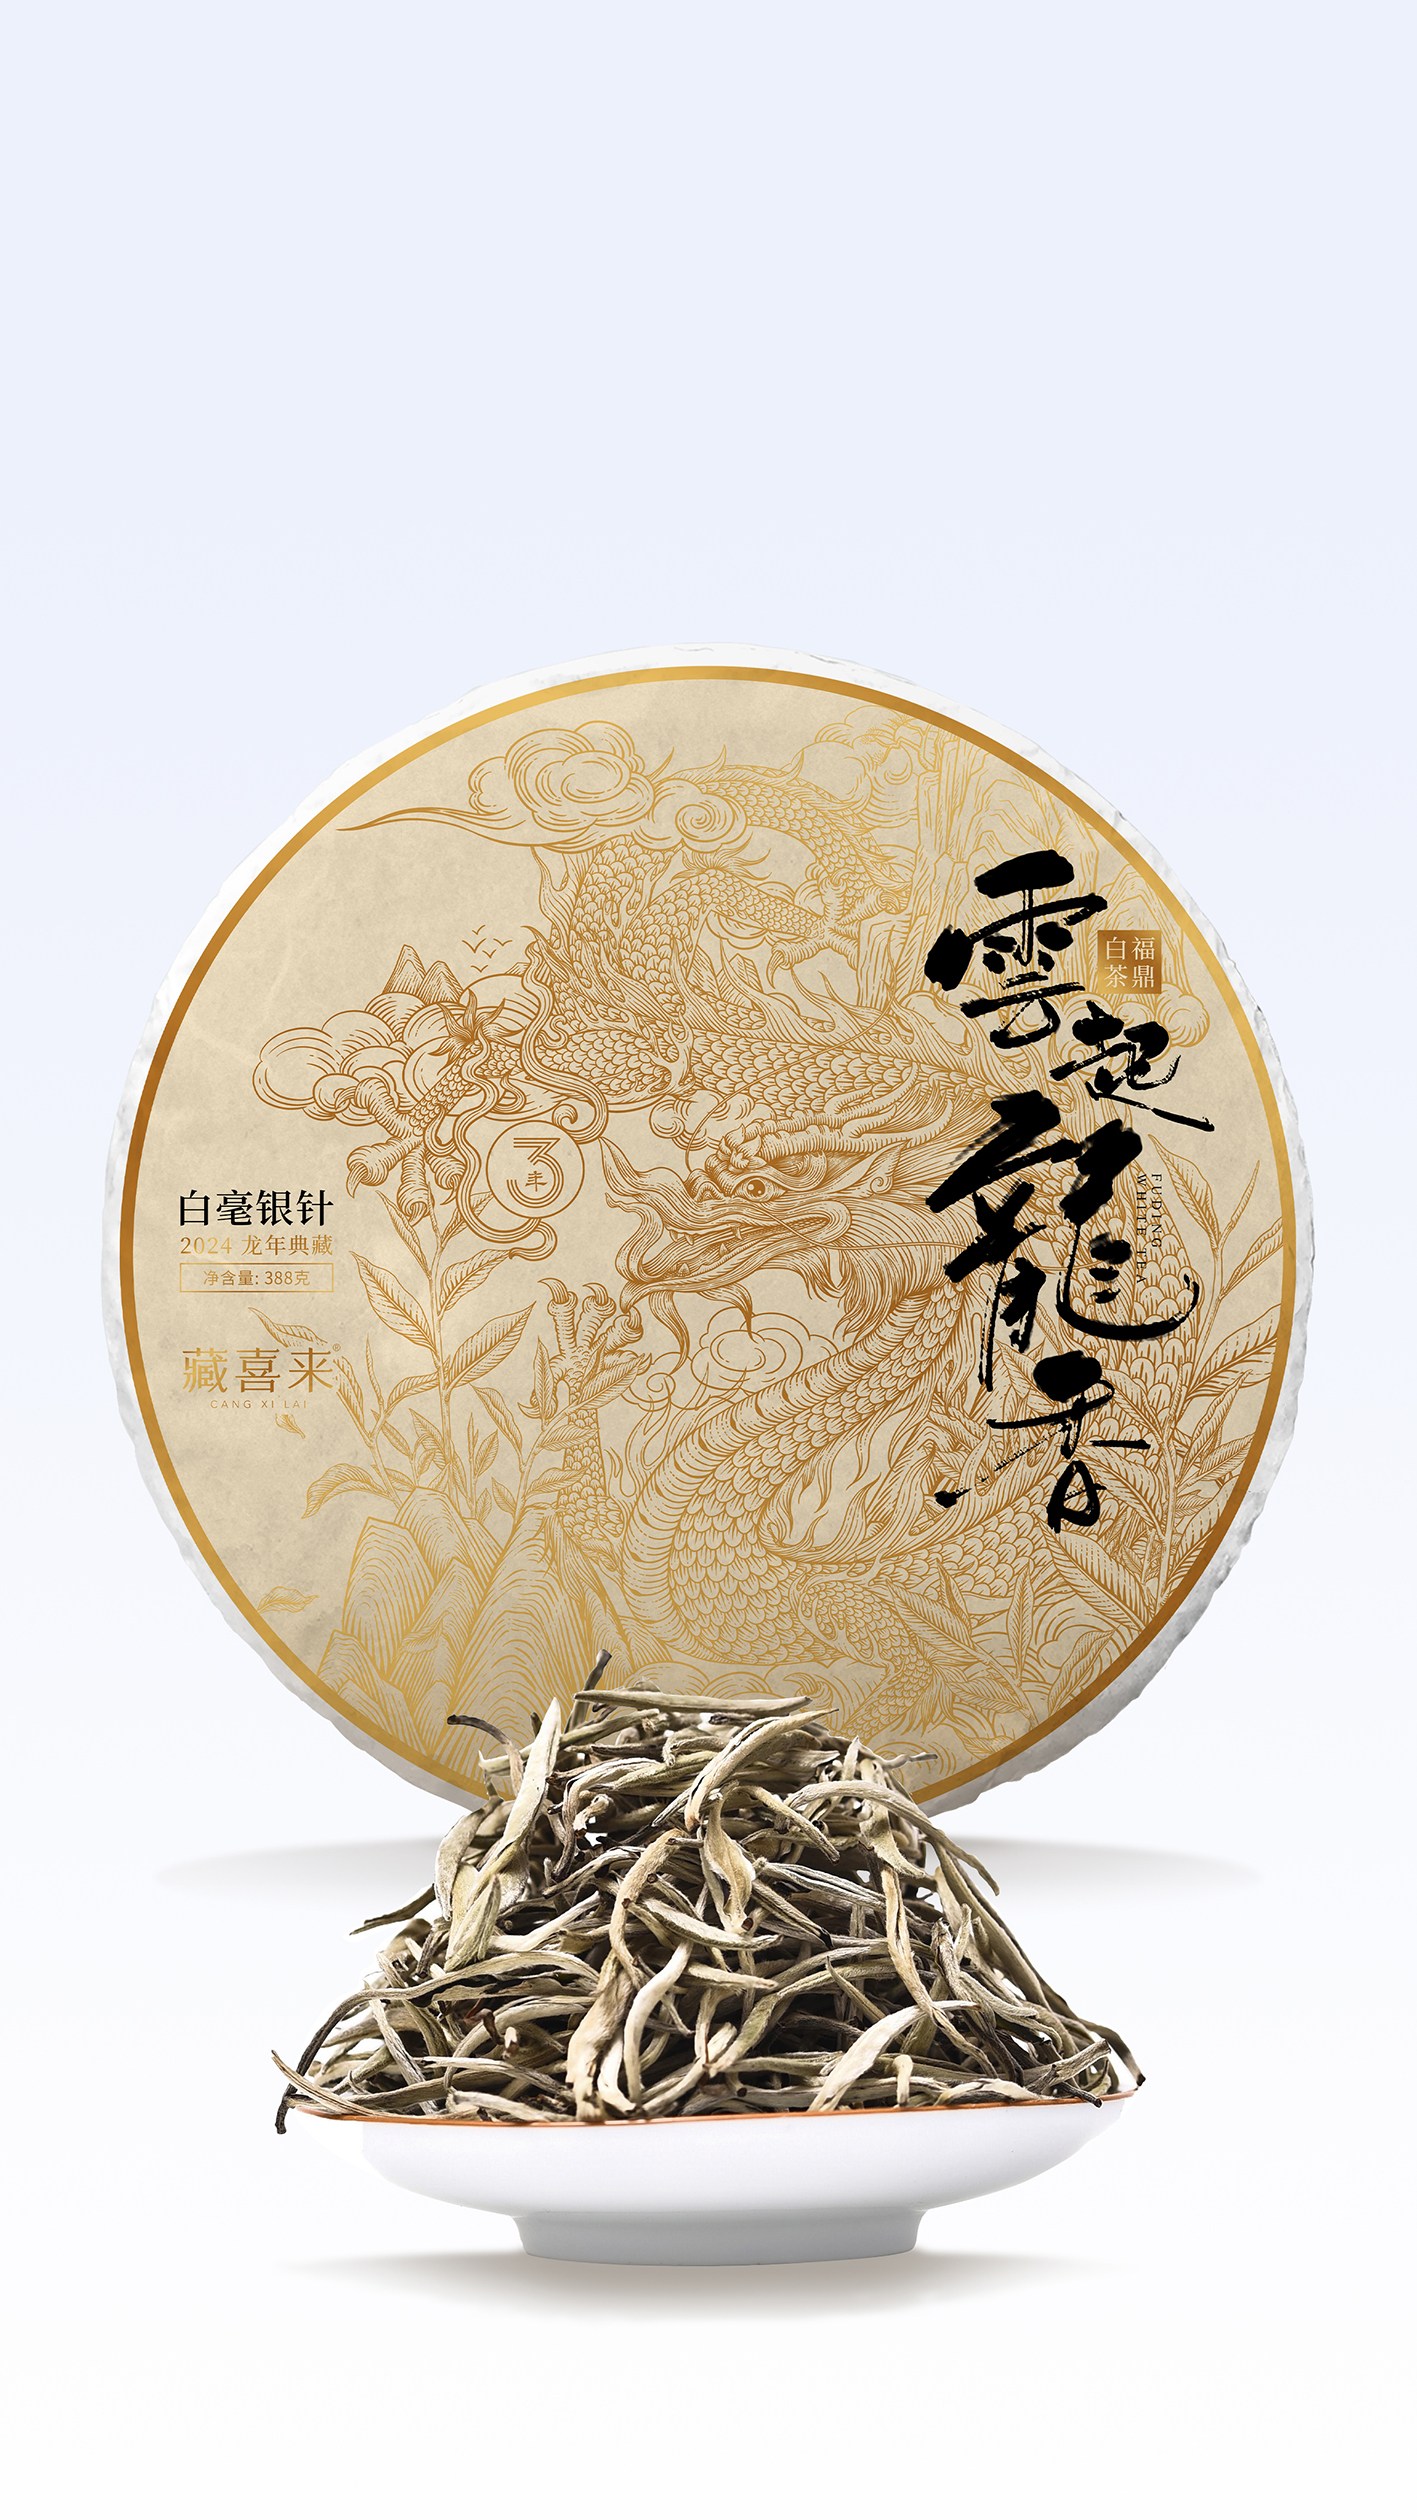 藏喜来白毫银针龙年茶礼包装设计 x 张晓宁(图3)